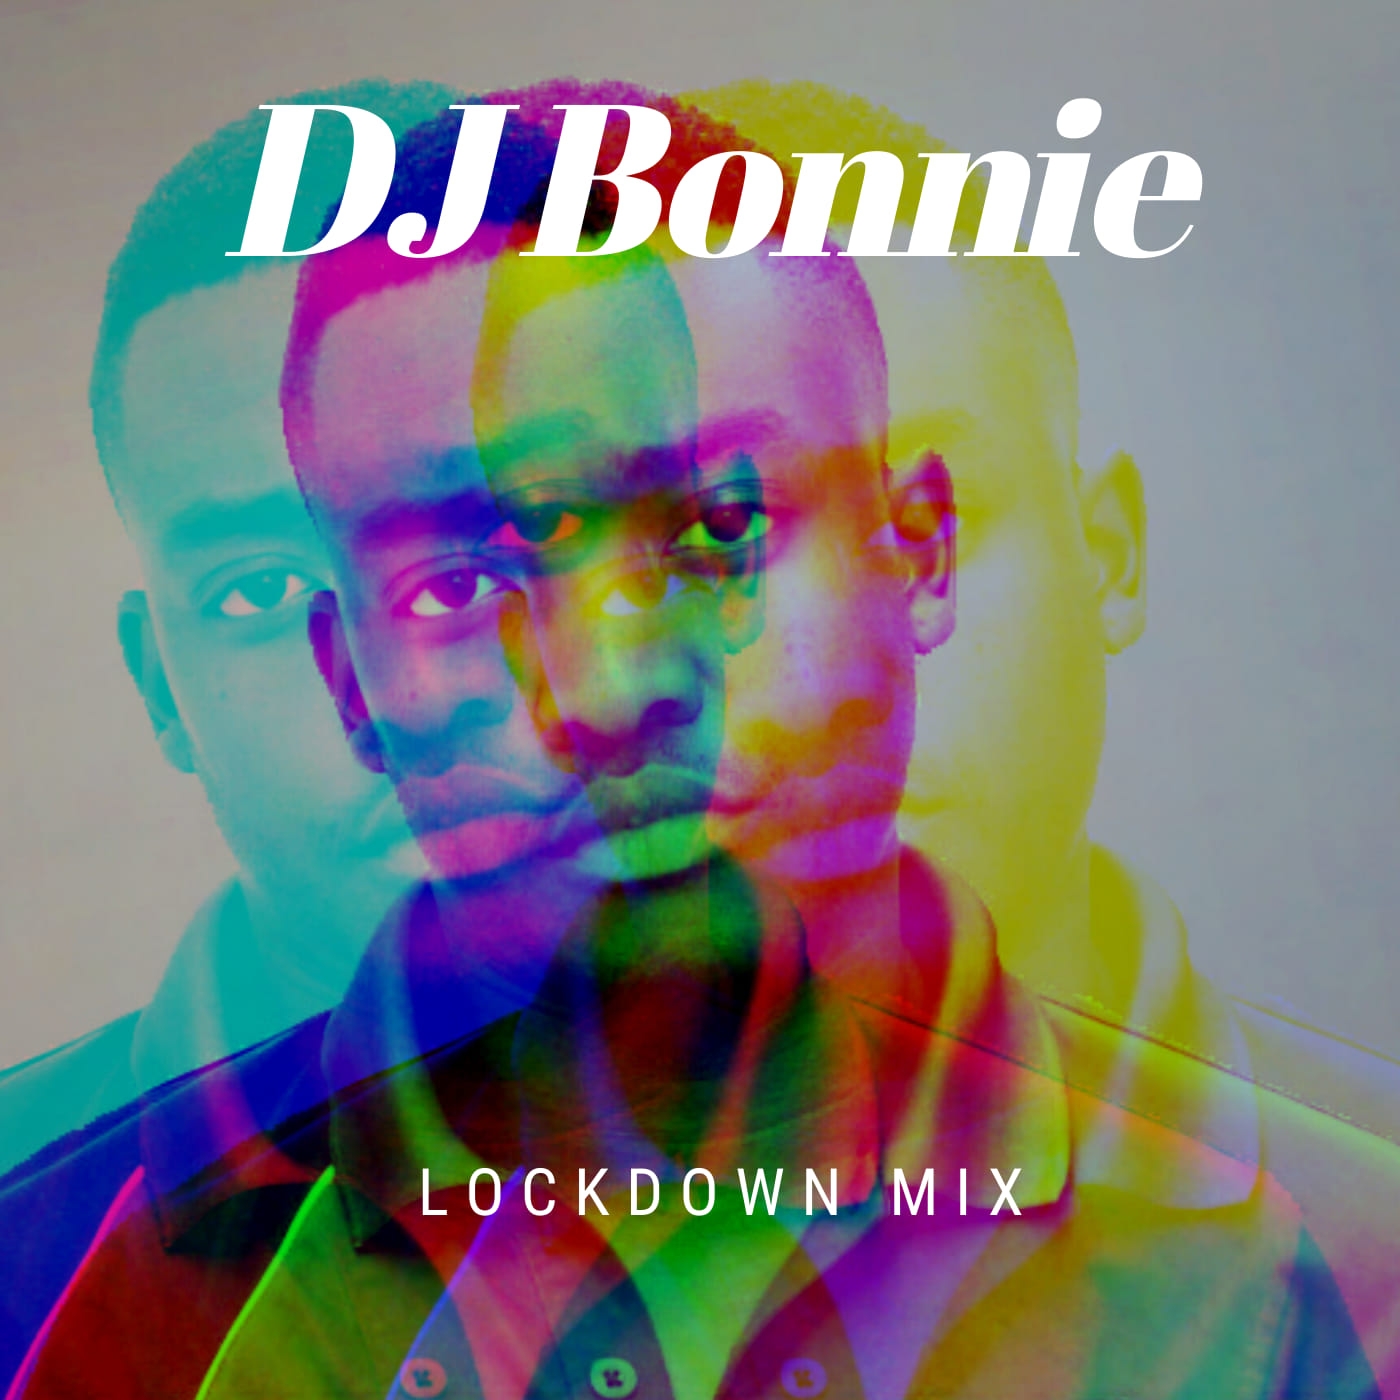 DJ Bonnie – Lockdown Mix mp3 download